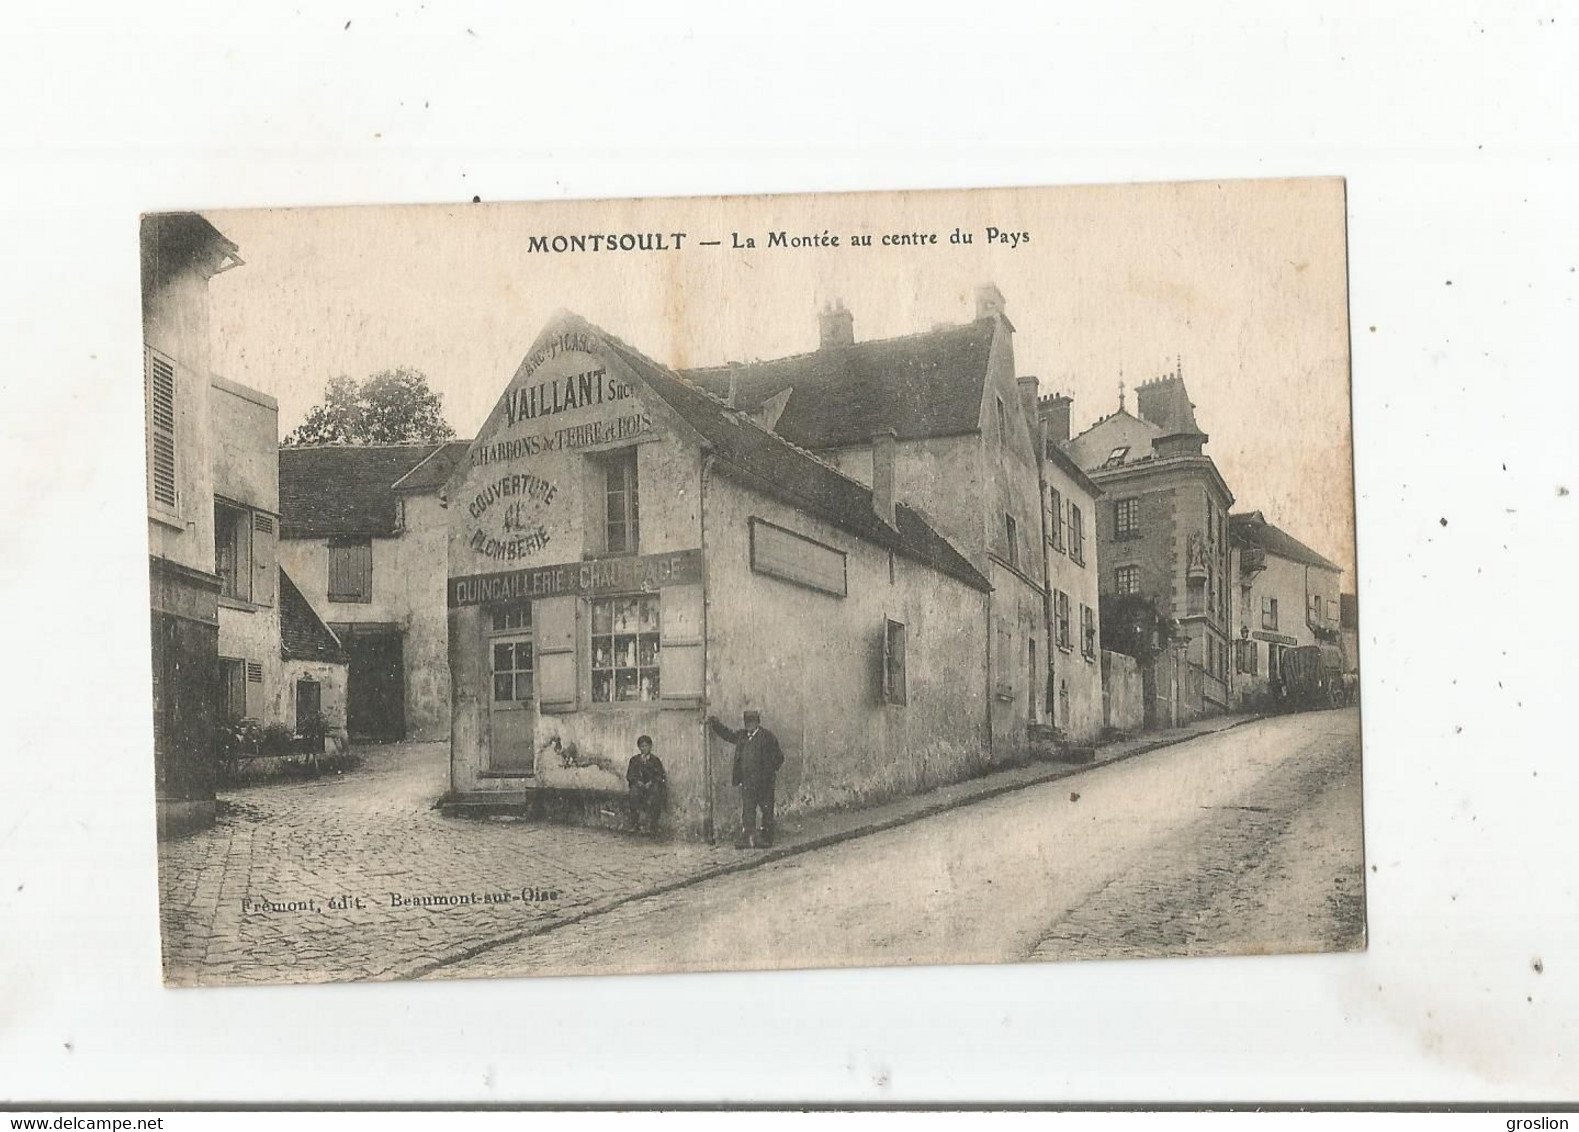 MONTSOULT LA MONTEE AU CENTRE DU PAYS  (QUINCAILLERIE CHAUFFAGE VAILLANT SUCCESSEUR) 1919 - Montsoult